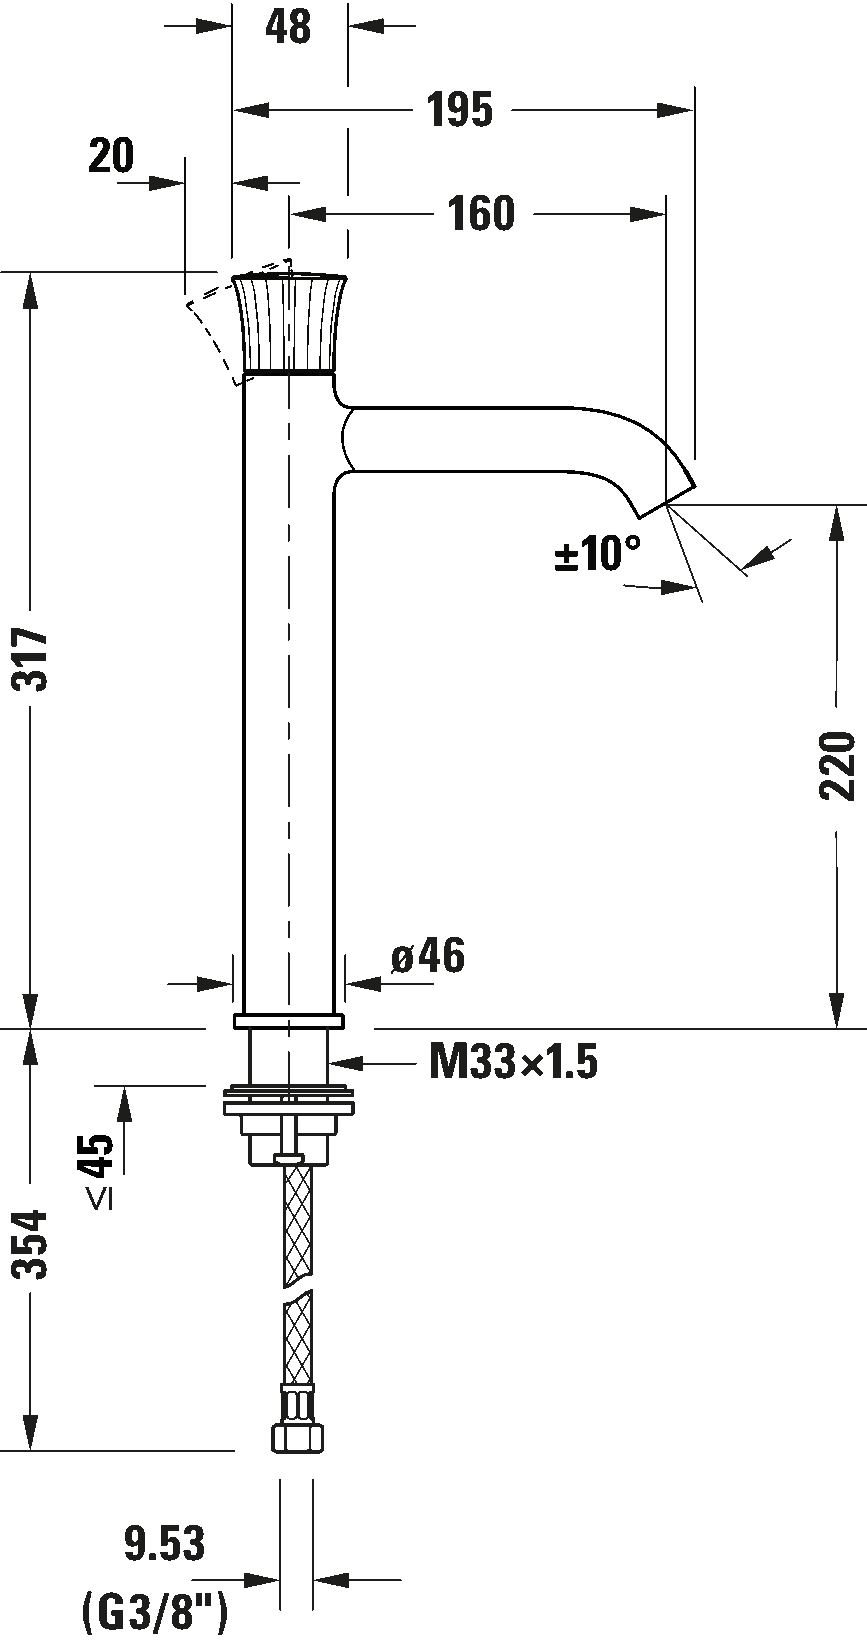 Single lever basin mixer XL, WT1040002